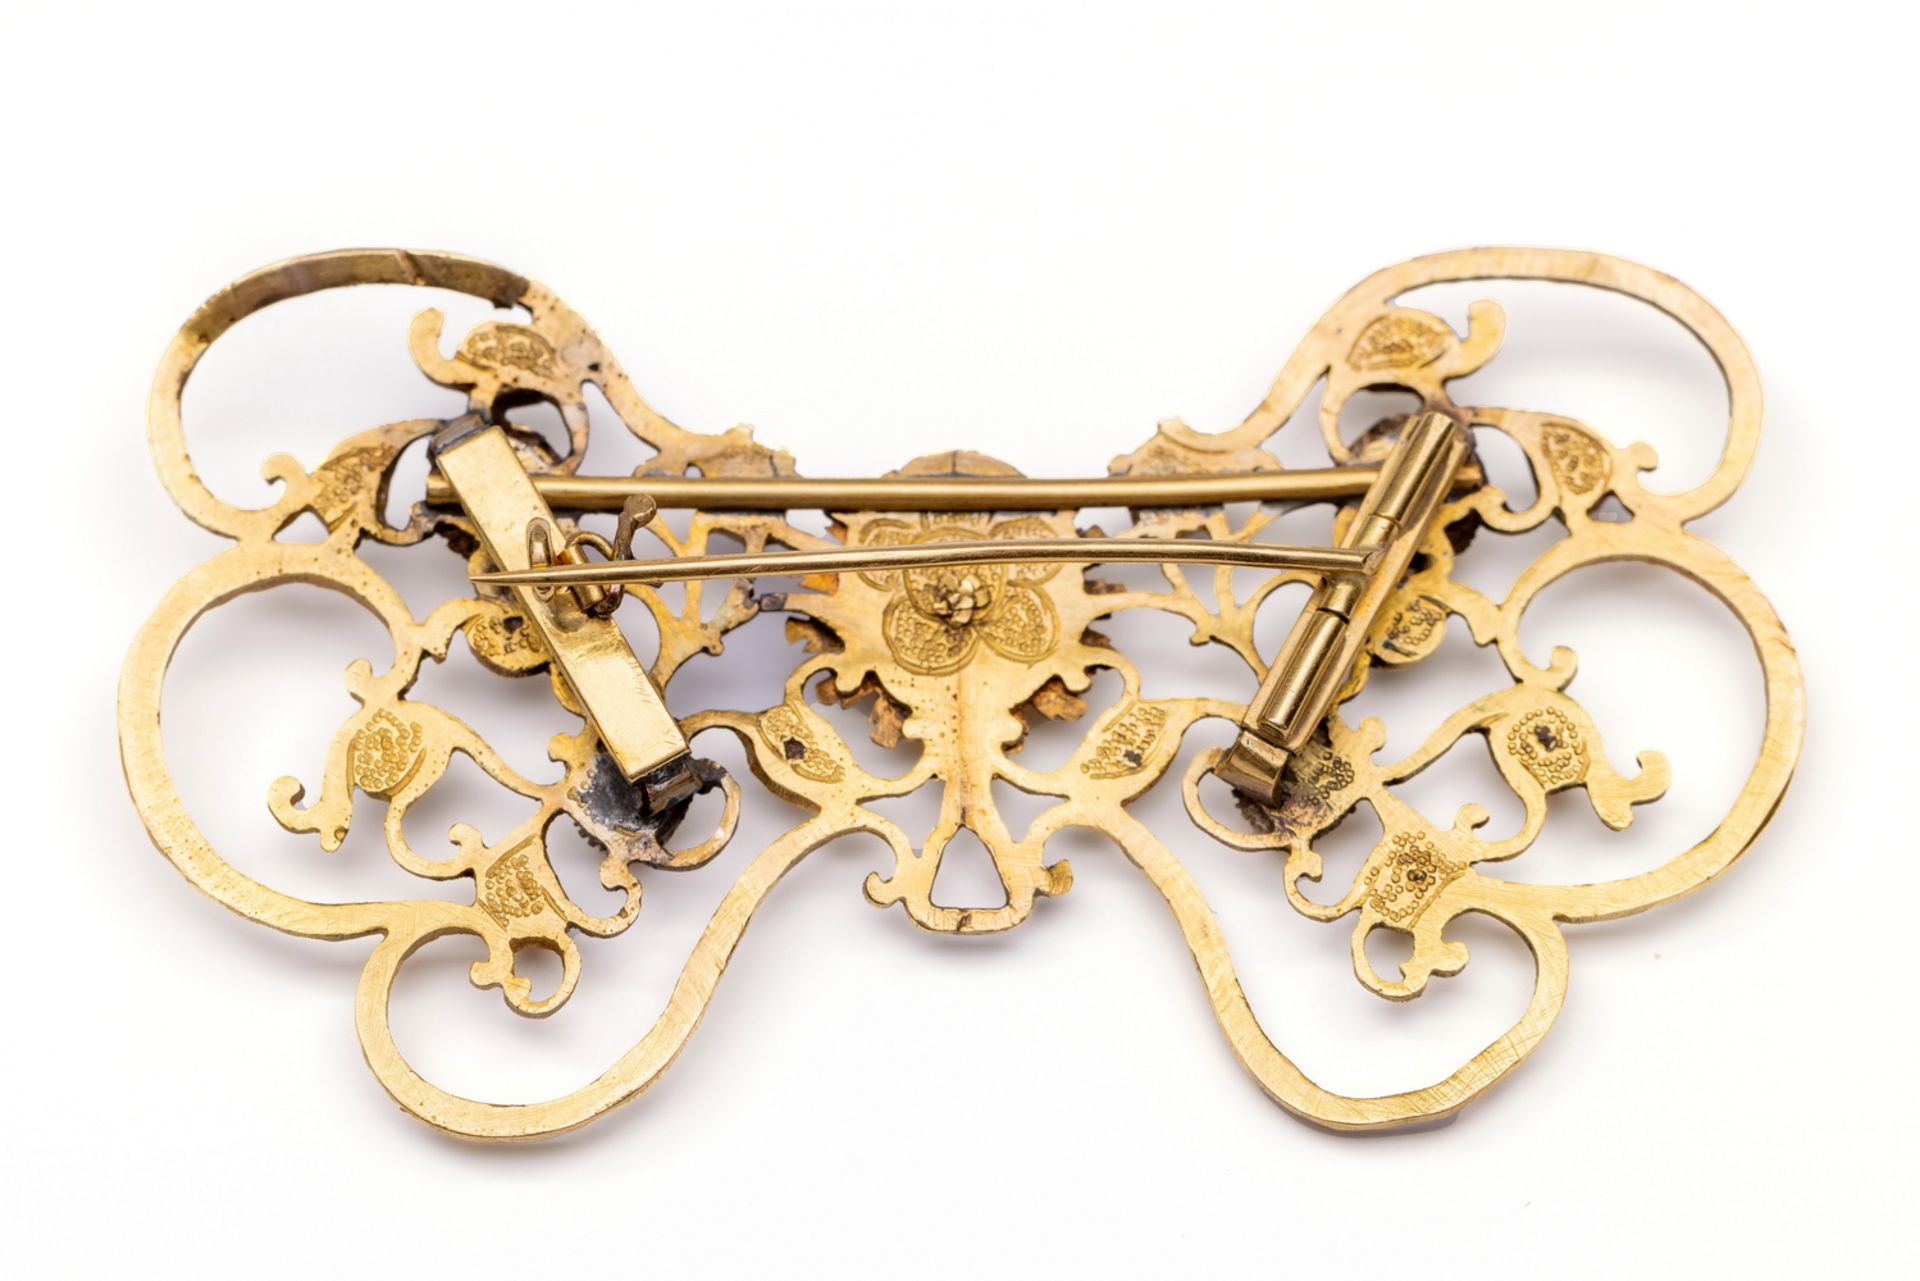 18 kt. gouden strikbroche, laat 18e eeuw. - Image 2 of 2